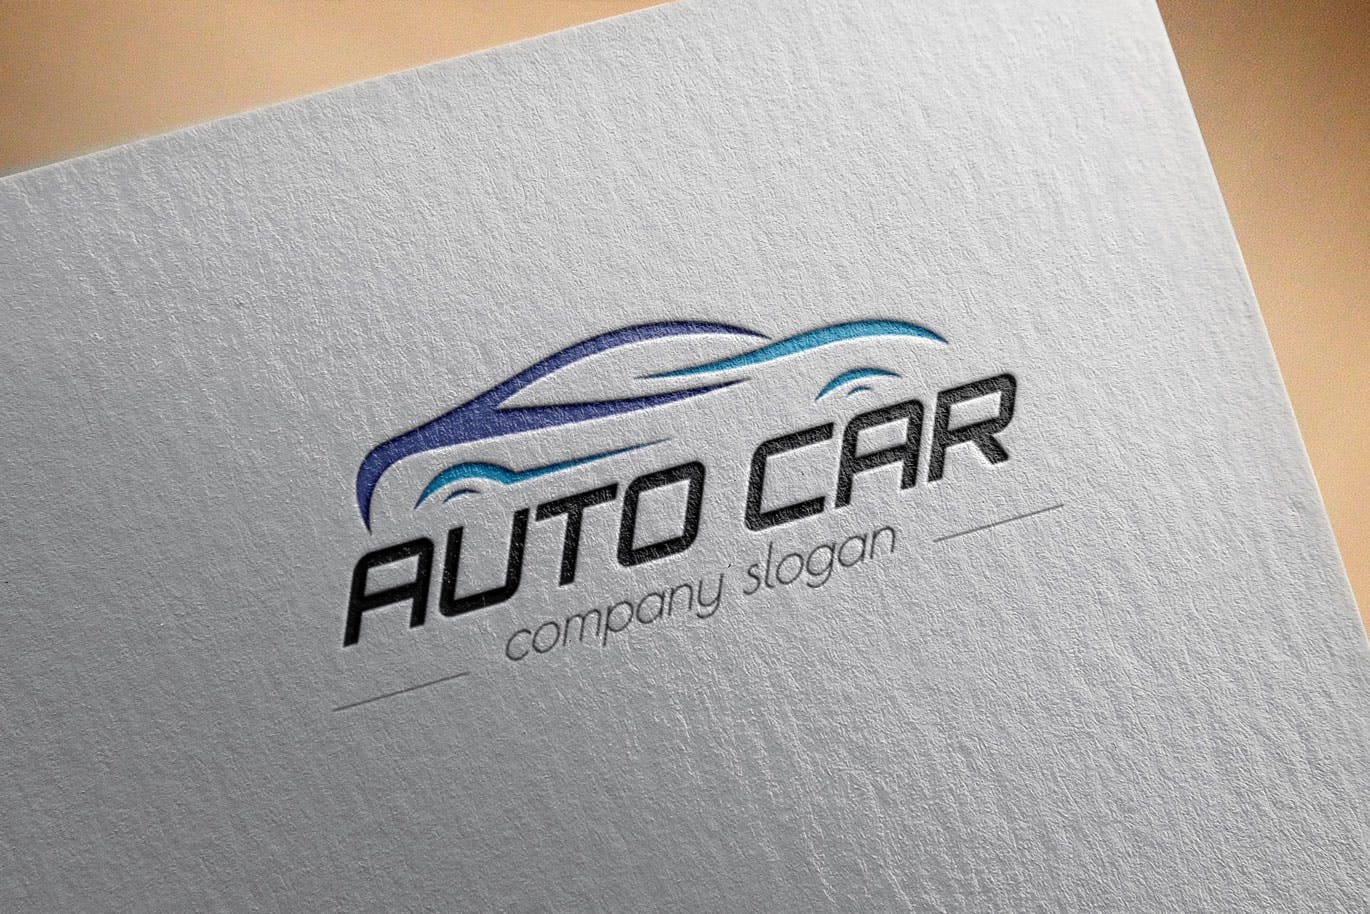 汽车相关企业品牌Logo设计蚂蚁素材精选模板 Auto Car Business Logo Template插图(2)